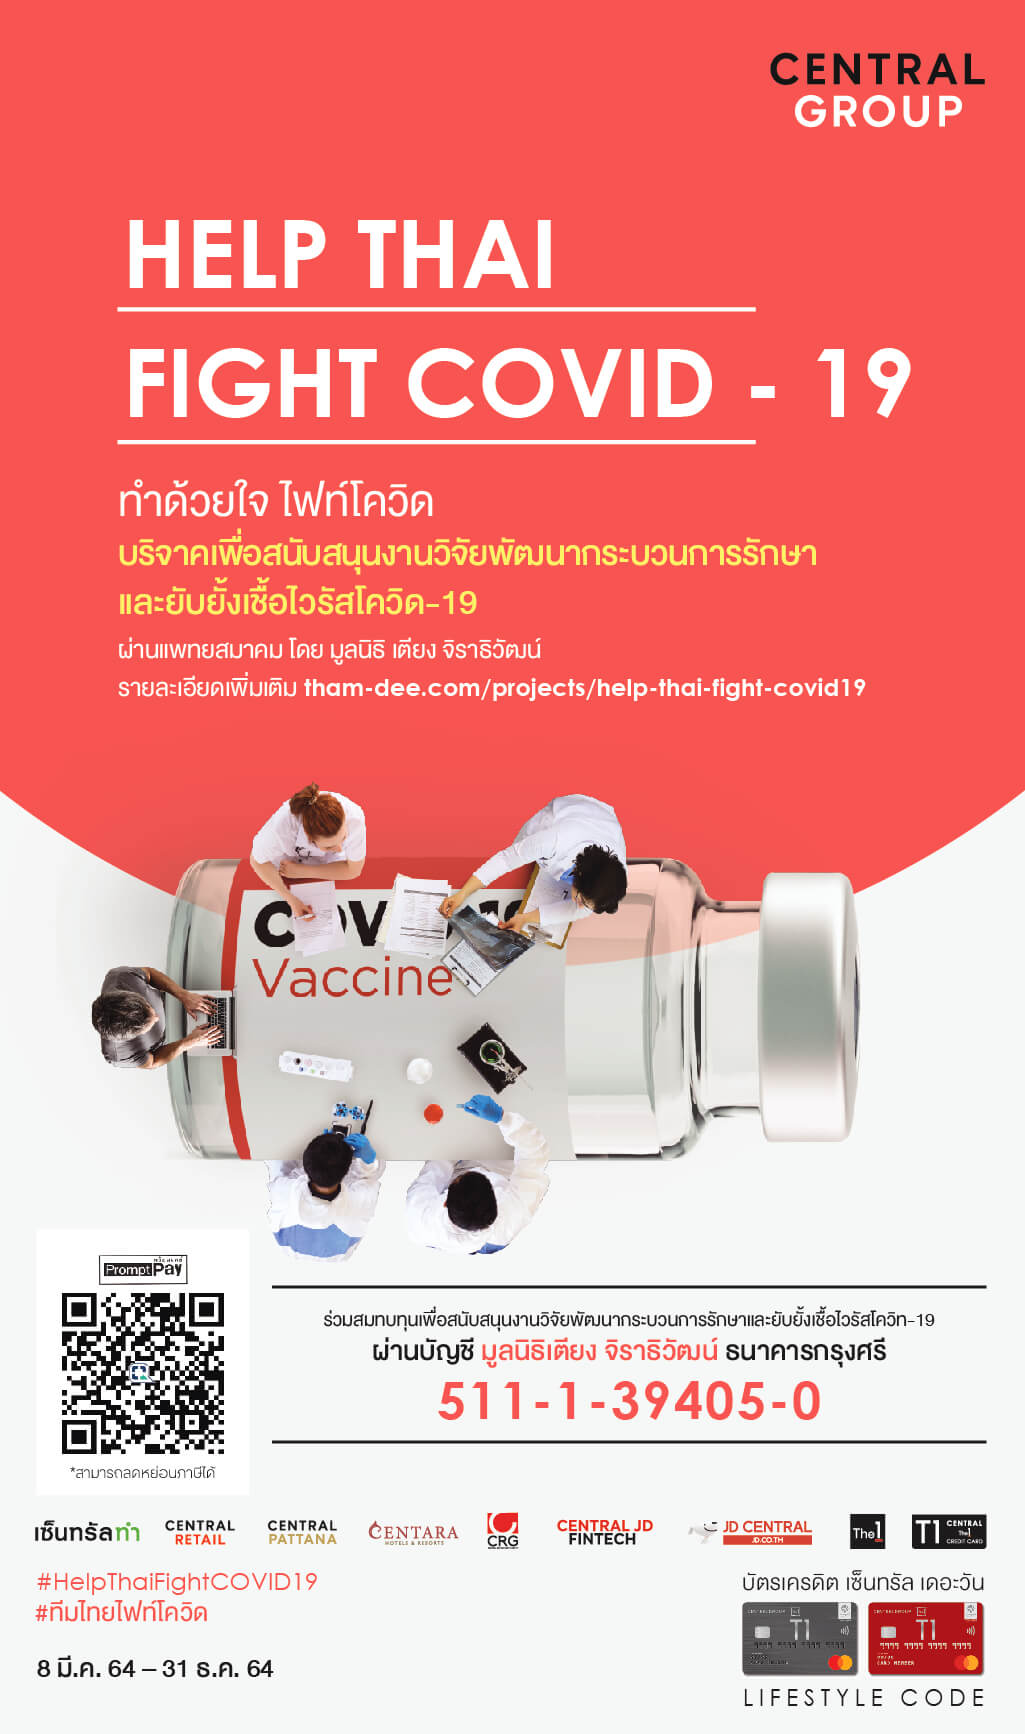 “ทำด้วยใจ ไฟท์โควิด-19 (Help Thai Fight COVID-19) ชวนร่วมสนับสนุนทุนวิจัยและพัฒนากระบวนการรักษาและป้องกันโรคที่เกิดจากโควิด-19